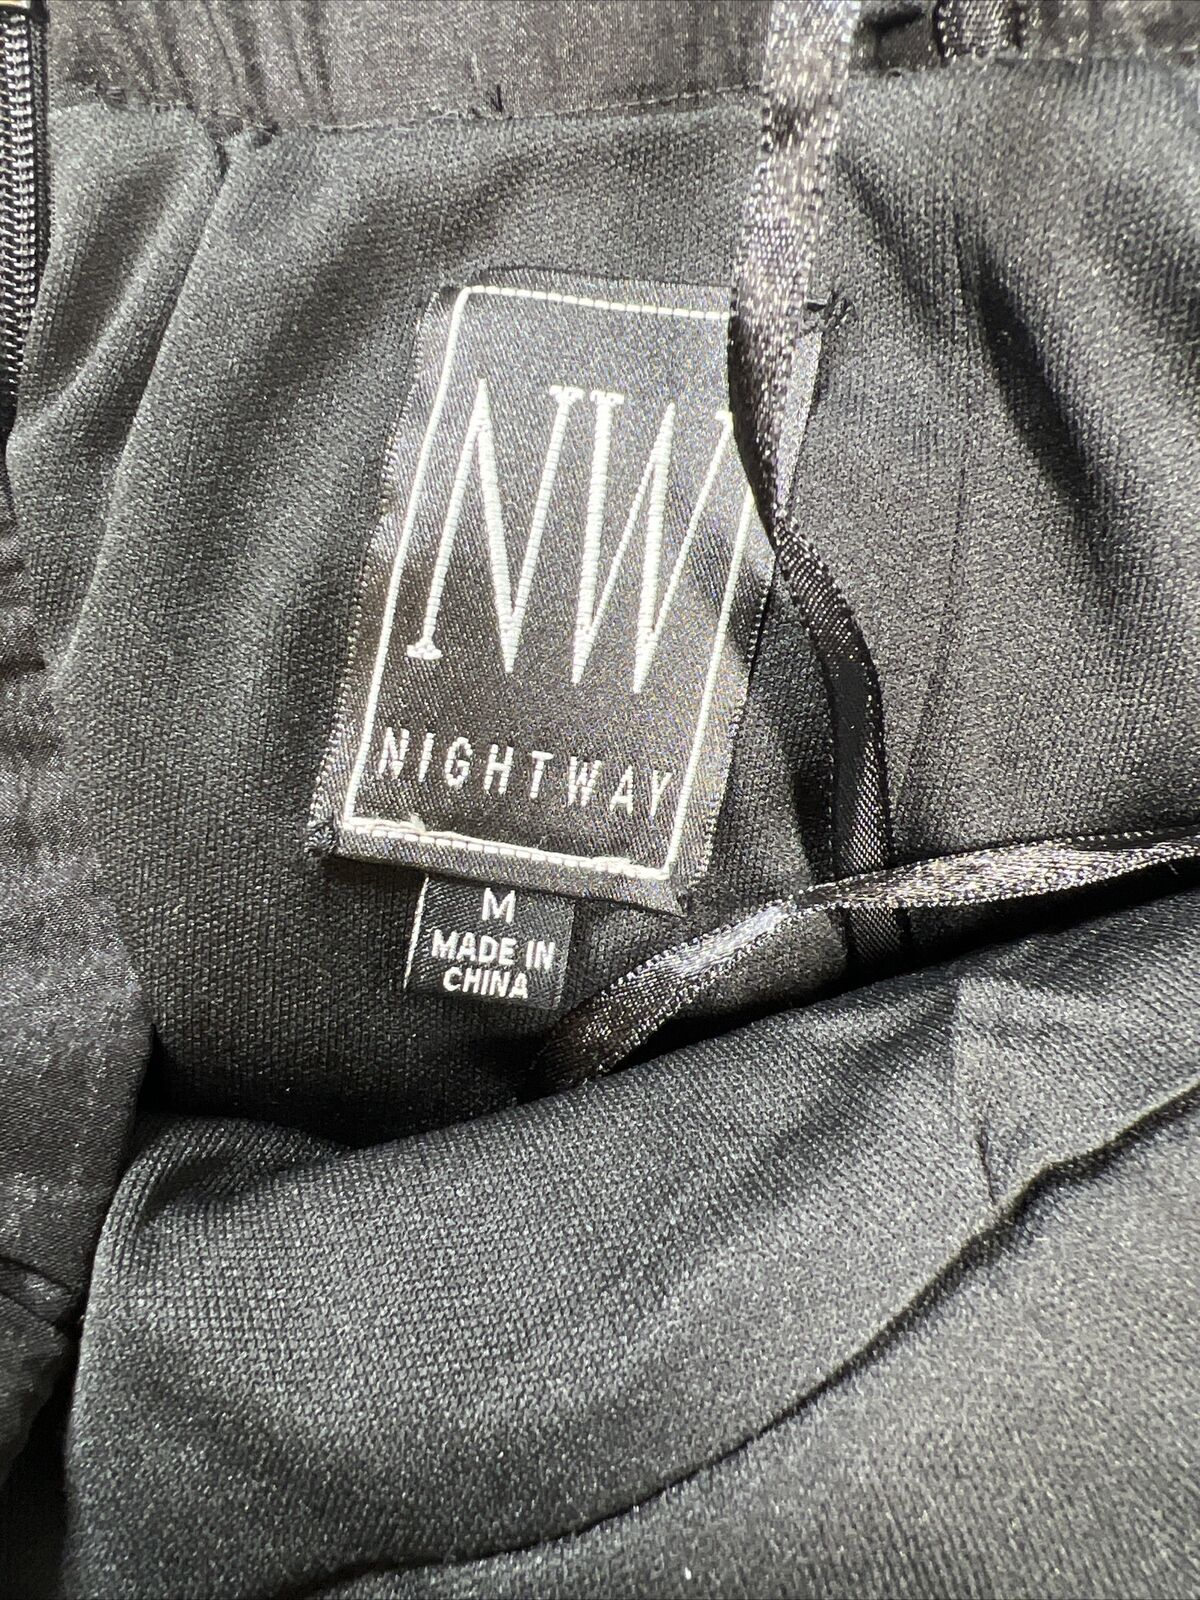 NUEVO vestido sin tirantes con lentejuelas negras de Nightway para mujer - M